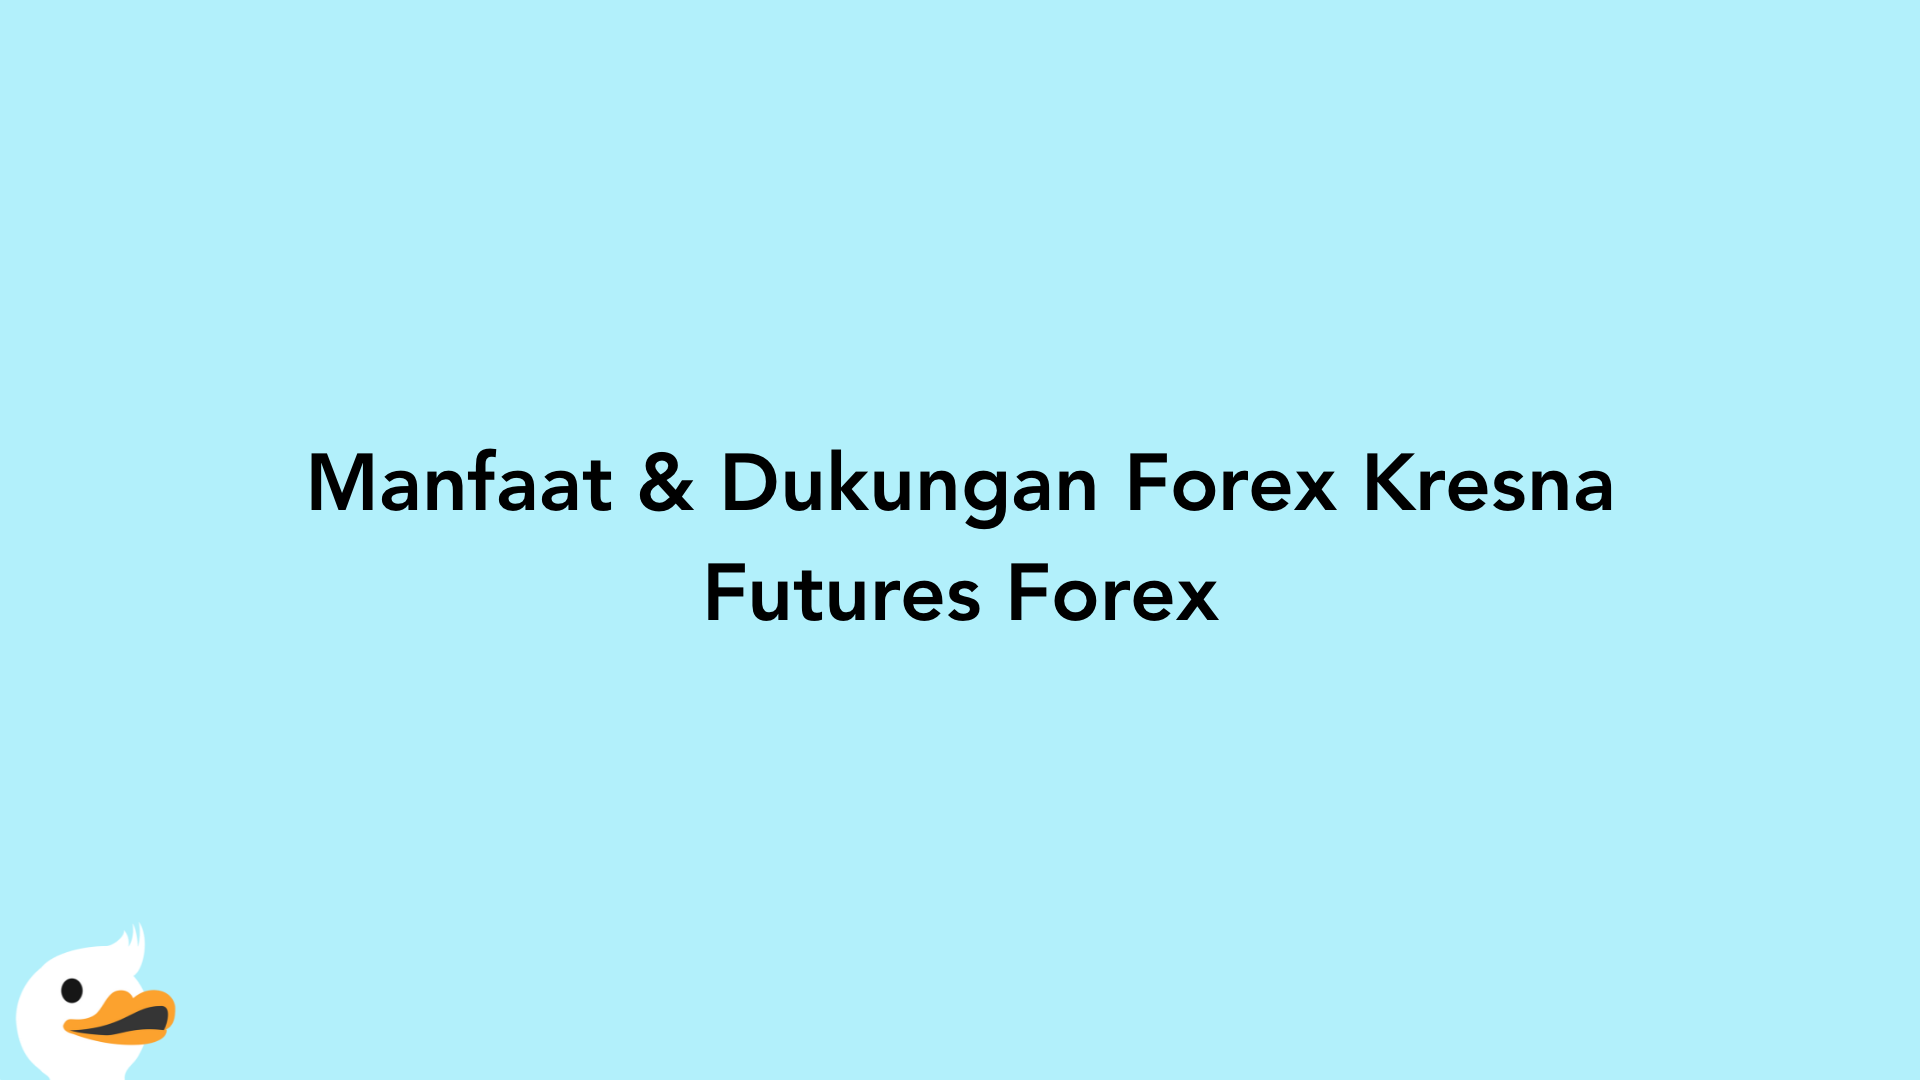 Manfaat & Dukungan Forex Kresna Futures Forex